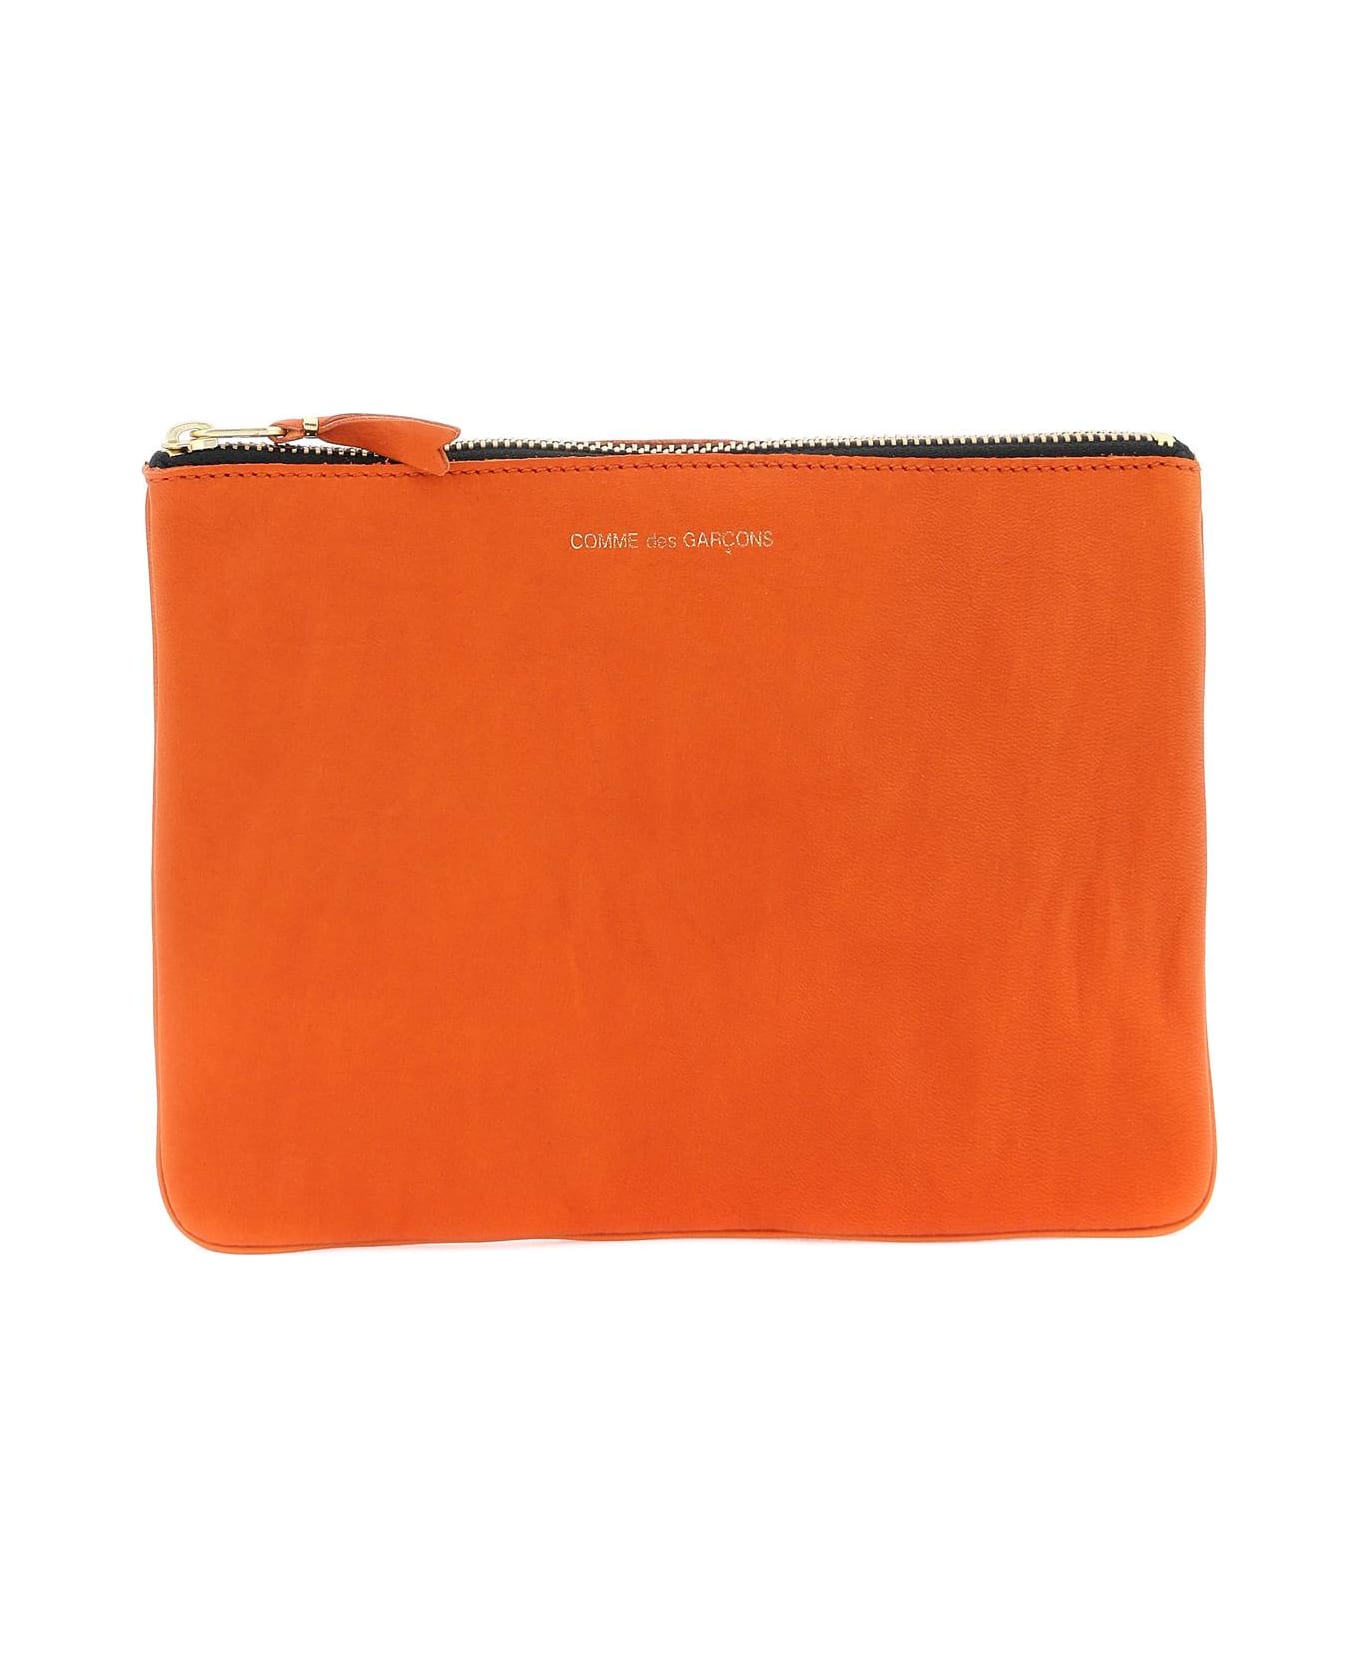 Comme des Garçons Wallet Classic Pouch - BURNT ORANGE (Orange)